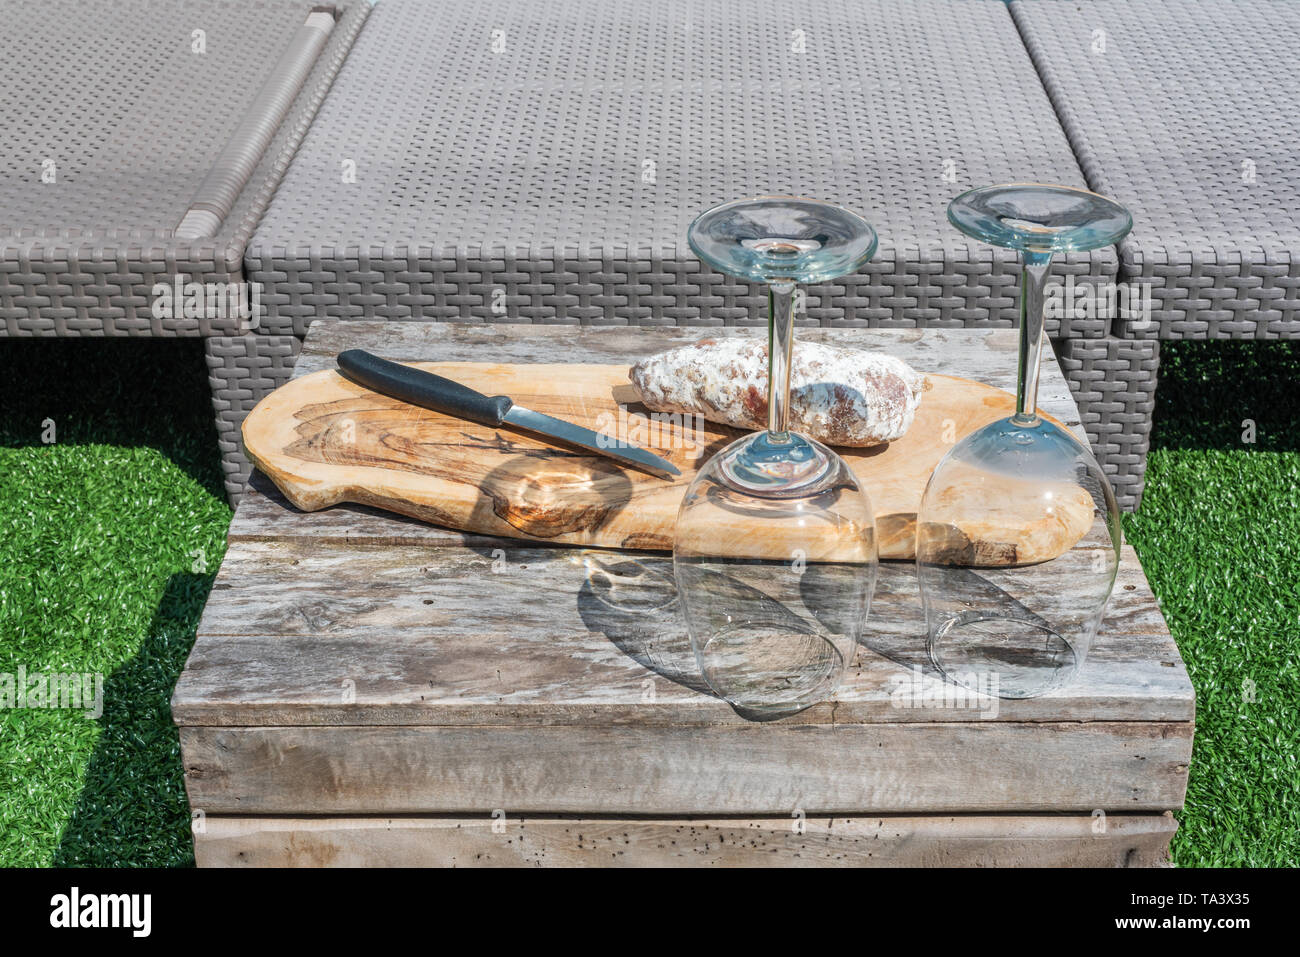 Vuoto due bicchieri di vino e una salsiccia secca con un coltello su un tavolo di legno in un giardino in una giornata di sole Foto Stock